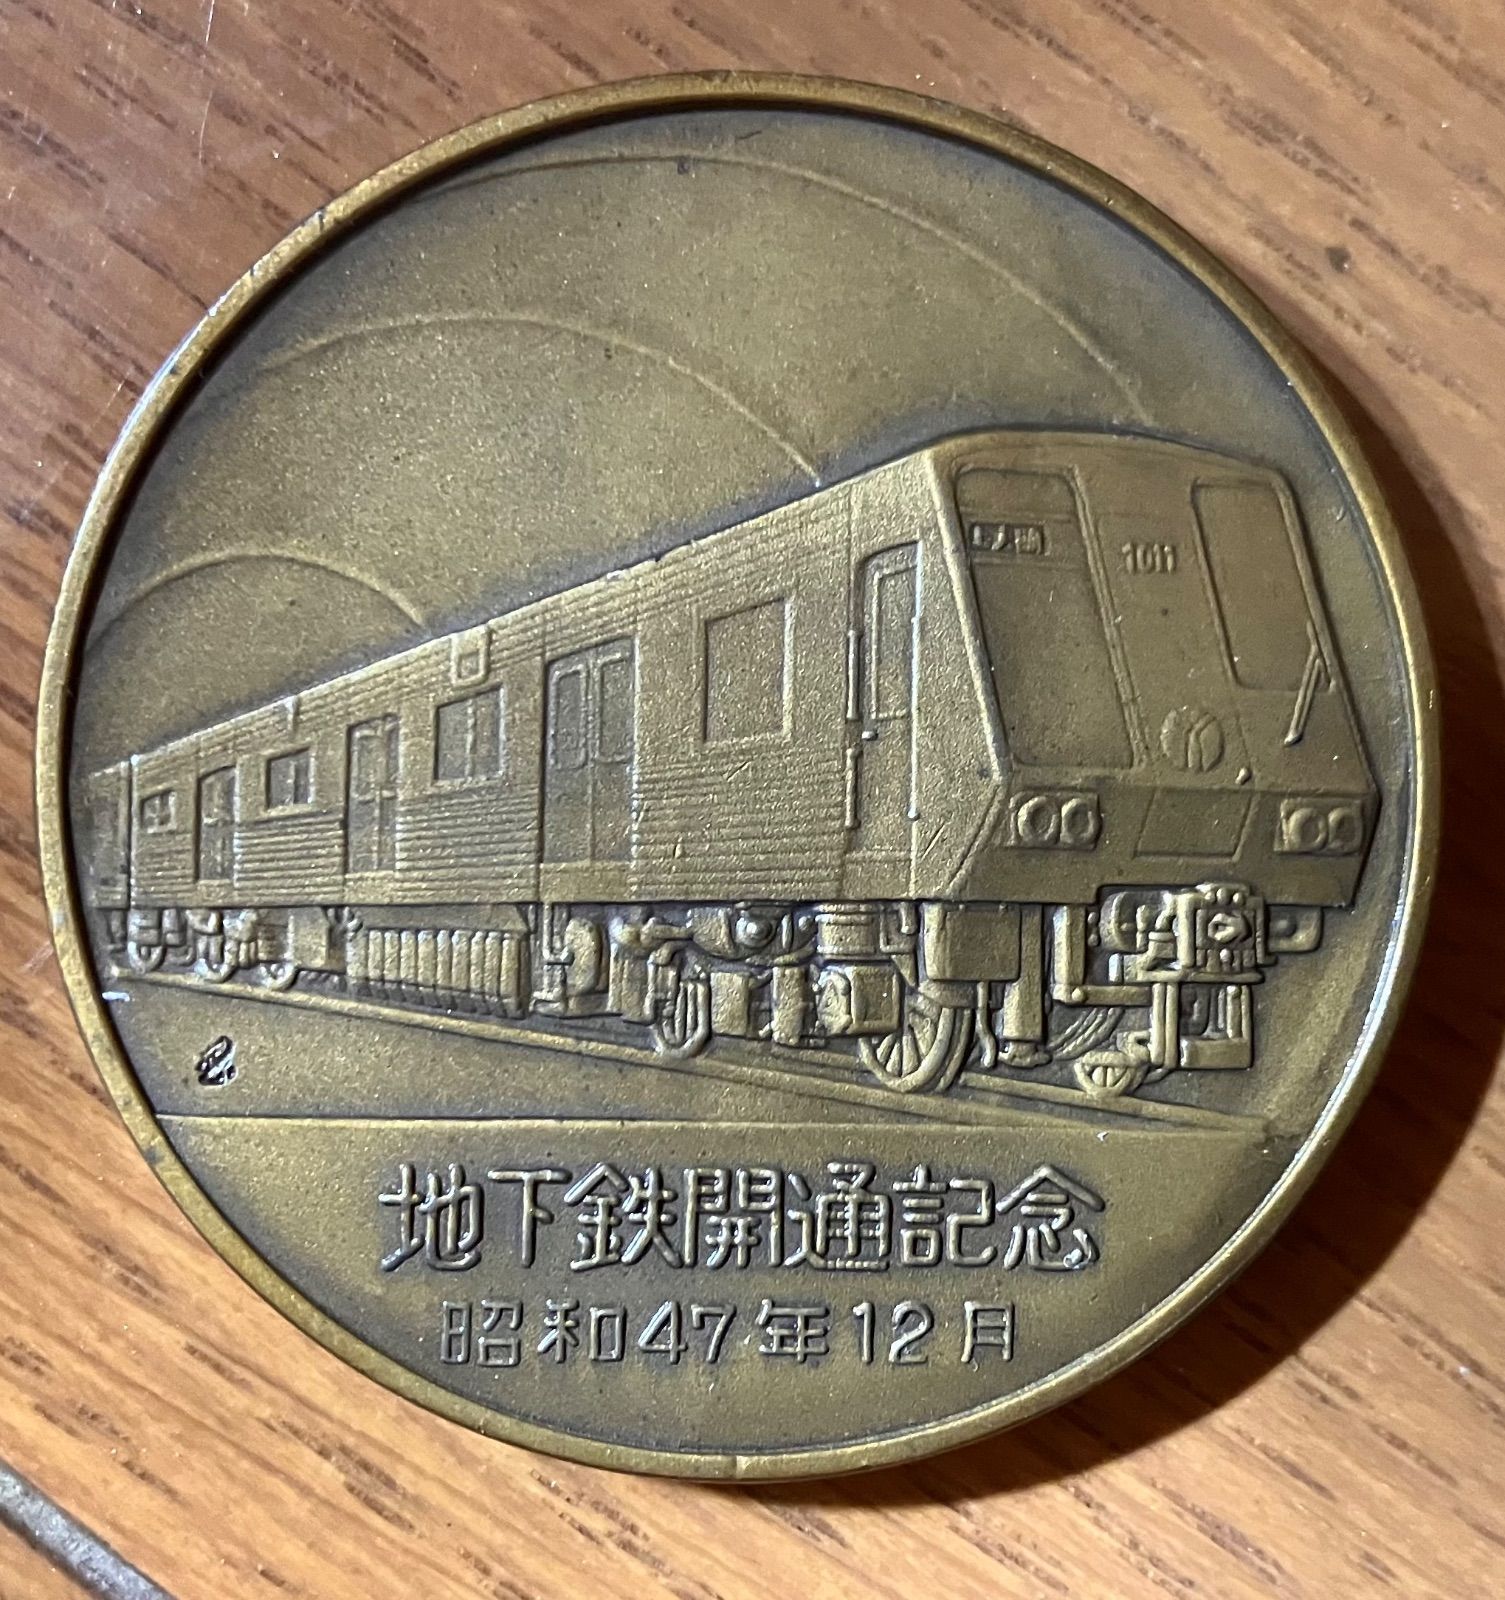 横浜市営地下鉄 開通記念メダル - コレクション